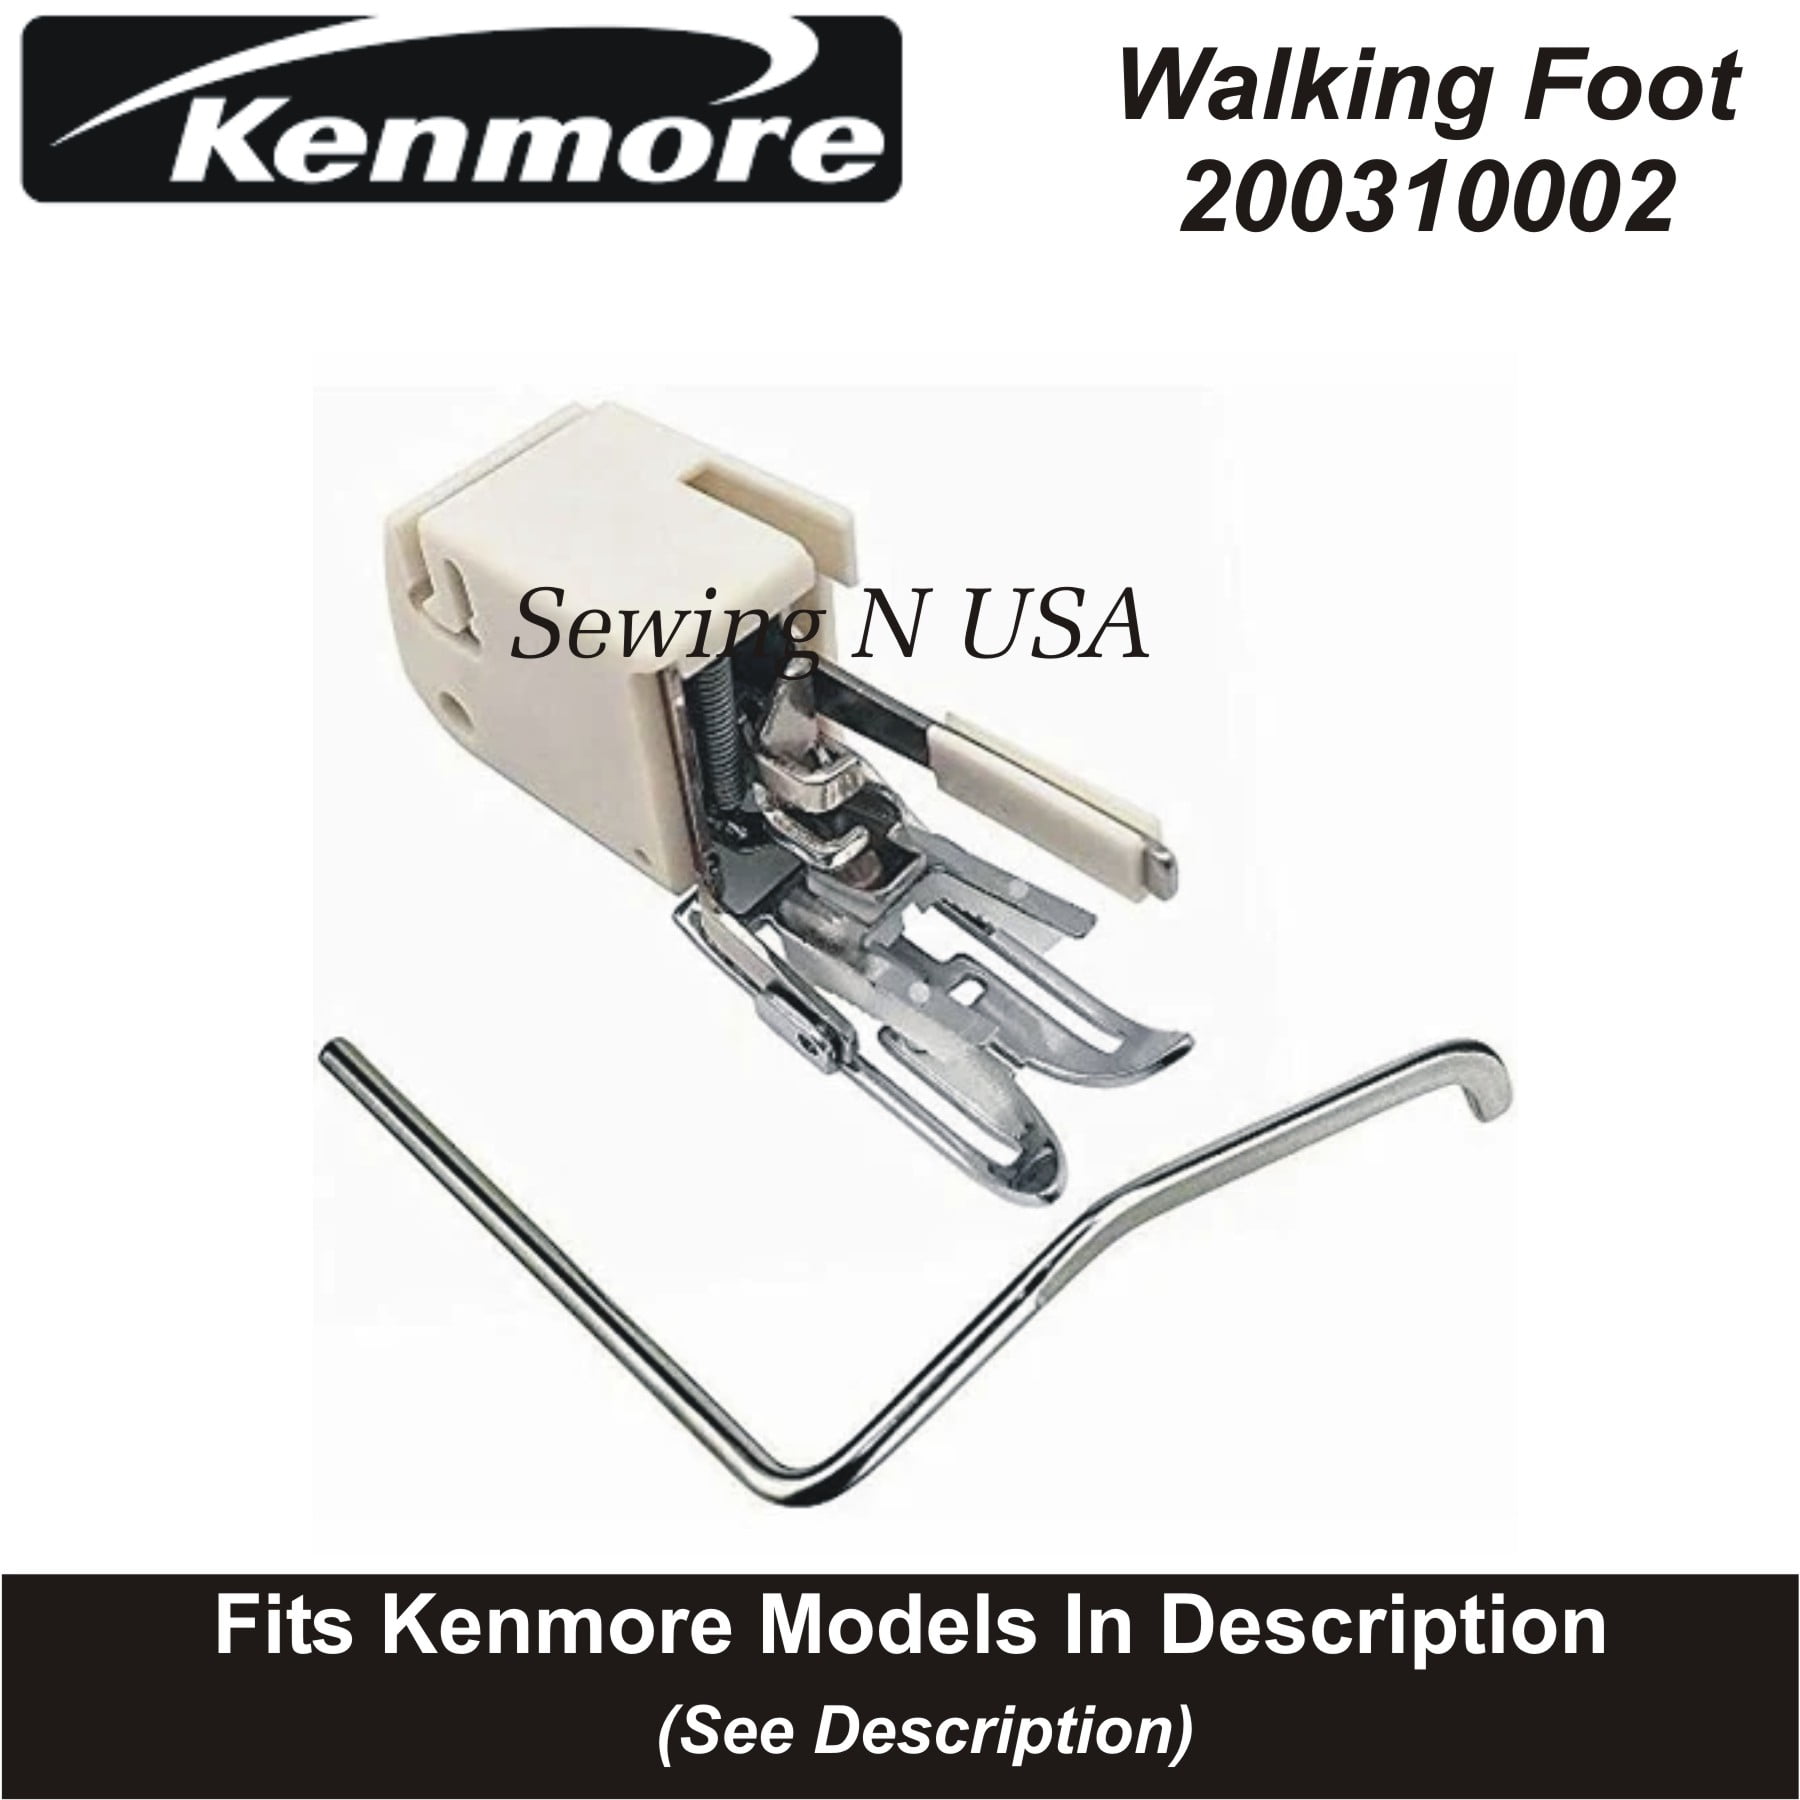 Kenmore Low Shank Walking Foot 10449-J Fits Models In Description